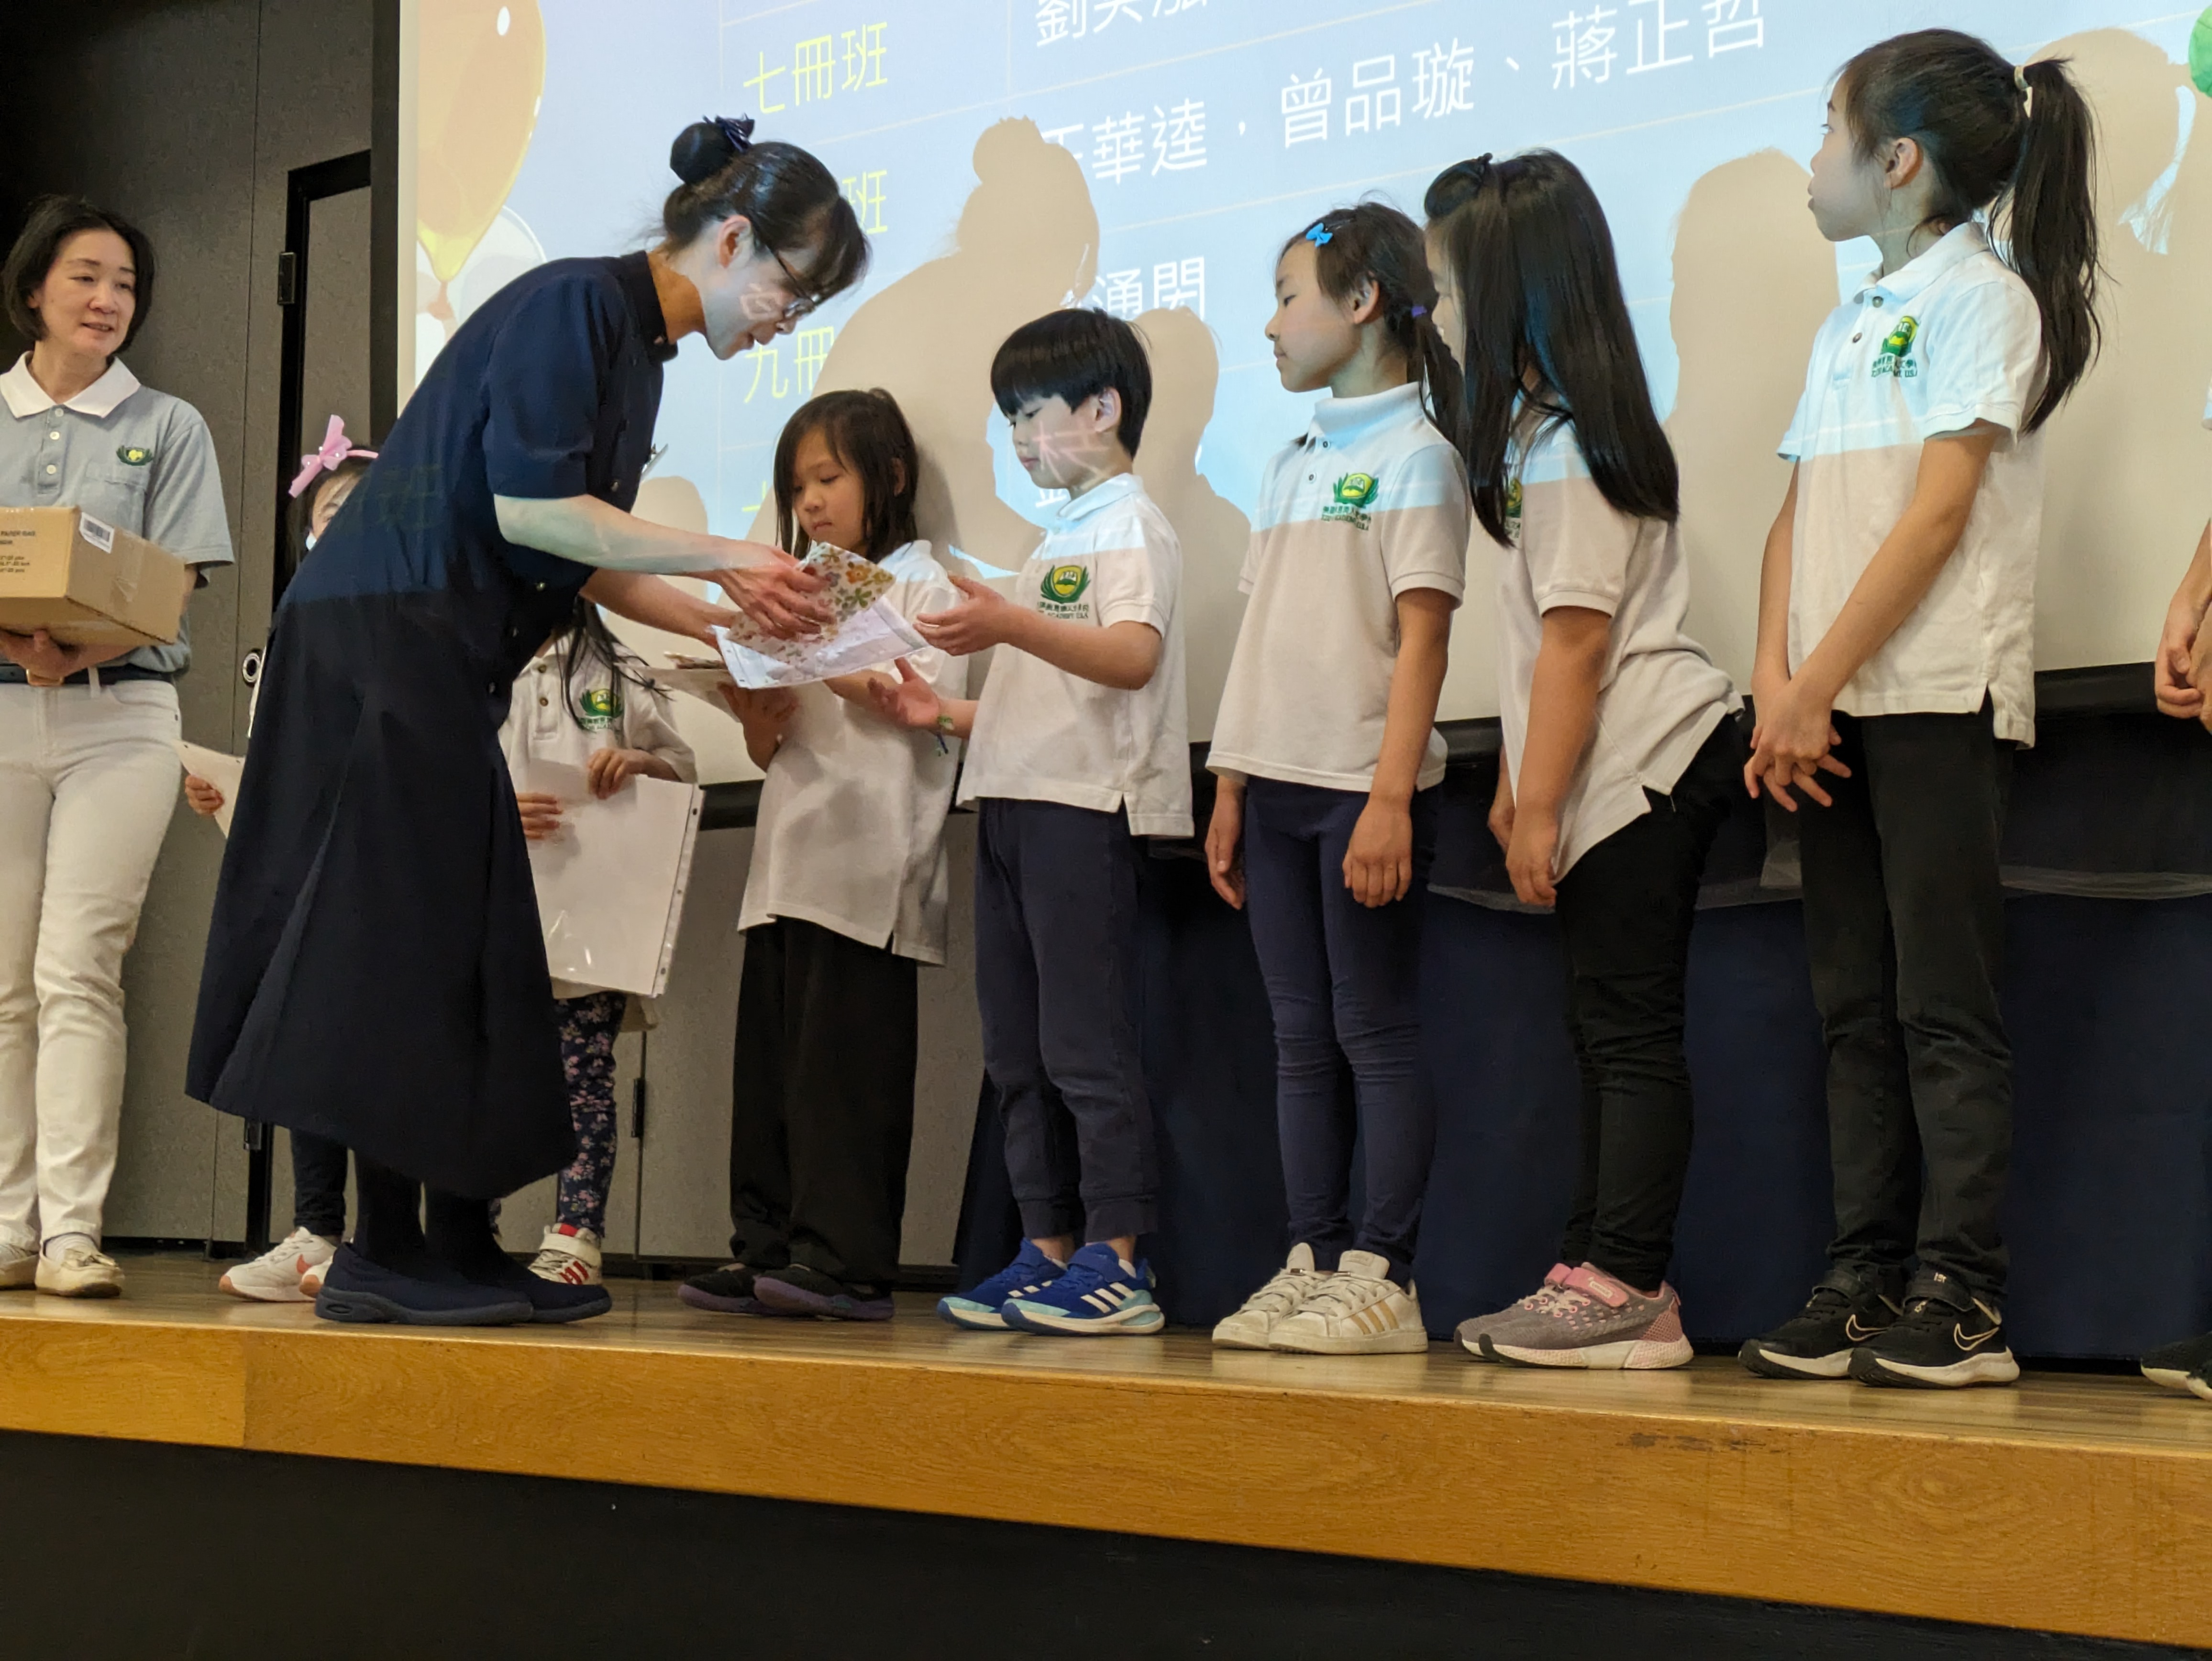 黃靜妍校長頒發勤學獎給低年級的得獎學生